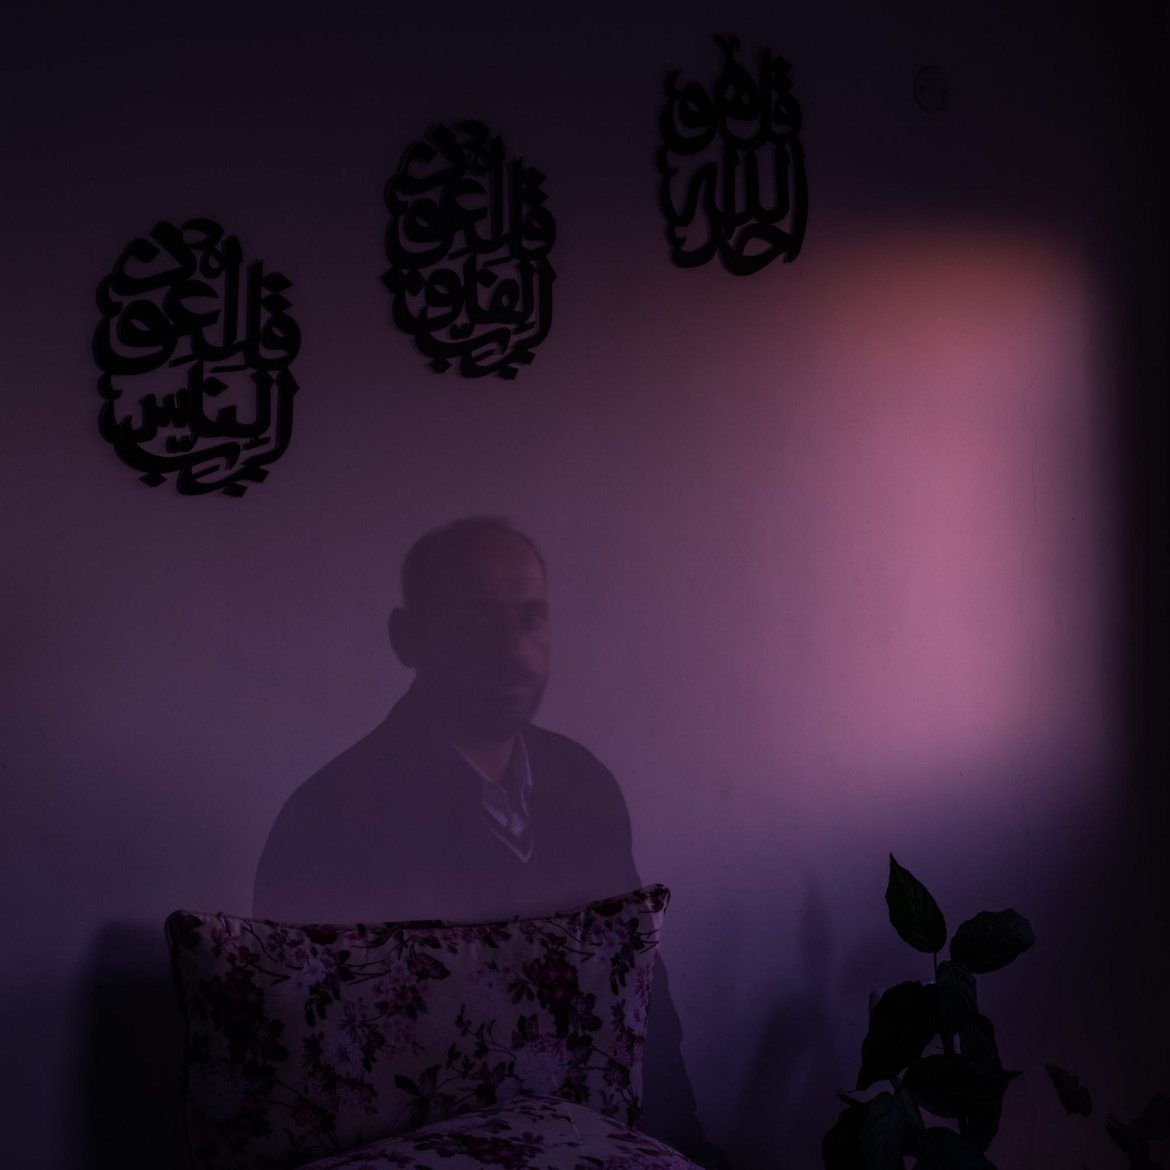 fot. Antonio Faccilongo, Włochy, z cyklu "Habibi" / World Press Photo 2021<br></br><br></br>Według raportu organizacji praw człowieka B’Tselem z lutego 2021 r. w izraelskich więzieniach jest przetrzymywanych prawie 4200 palestyńskich więźniów. Niektórym grozi wyrok 20 lat pozbawienia wolności lub więcej. Aby odwiedzić palestyńskiego więźnia przebywającego w izraelskim więzieniu, odwiedzający muszą pokonać szereg różnych ograniczeń, wynikających z przepisów granicznych, przepisów więziennych oraz tych ustanowionych przez Izraelską Agencję Bezpieczeństwa (ISA).<br></br><br></br>Odwiedzający zwykle mogą widzieć więźniów tylko przez przezroczystą przegrodę i rozmawiać z nimi przez słuchawkę telefoniczną. Odmawia się wizyt małżeńskich, a kontakt fizyczny jest zabroniony, z wyjątkiem dzieci poniżej dziesiątego roku życia, którym na zakończenie każdej wizyty przysługuje dziesięć minut na objęcie ojców.<br></br><br></br>Od początku XXI wieku wieloletni palestyńscy więźniowie, którzy mają nadzieję na wychowanie rodzin, przemycają z więzienia włąsne nasienie, ukryte w prezentach dla swoich dzieci. Nasienie jest ukrywane na różne sposoby, na przykład w tubach po długopisach, plastikowych opakowaniach cukierków i wewnątrz tabliczek czekolady. W lutym 2021 roku Middle East Monitor poinformował, że 96. Palestyńskich dzieci urodziło się właśnie z nasienia przemyconego z izraelskiego więzienia.<br></br><br></br>Habibi, co po arabsku oznacza „moja miłość”, przedstawia historie miłosne osadzone na tle jednego z najdłuższych i najbardziej skomplikowanych konfliktów we współczesnej historii. Fotograf ma na celu ukazanie wpływu konfliktu na rodziny palestyńskie oraz trudności, z jakimi borykają się w walce o prawo do reprodukcyjnych i godności.